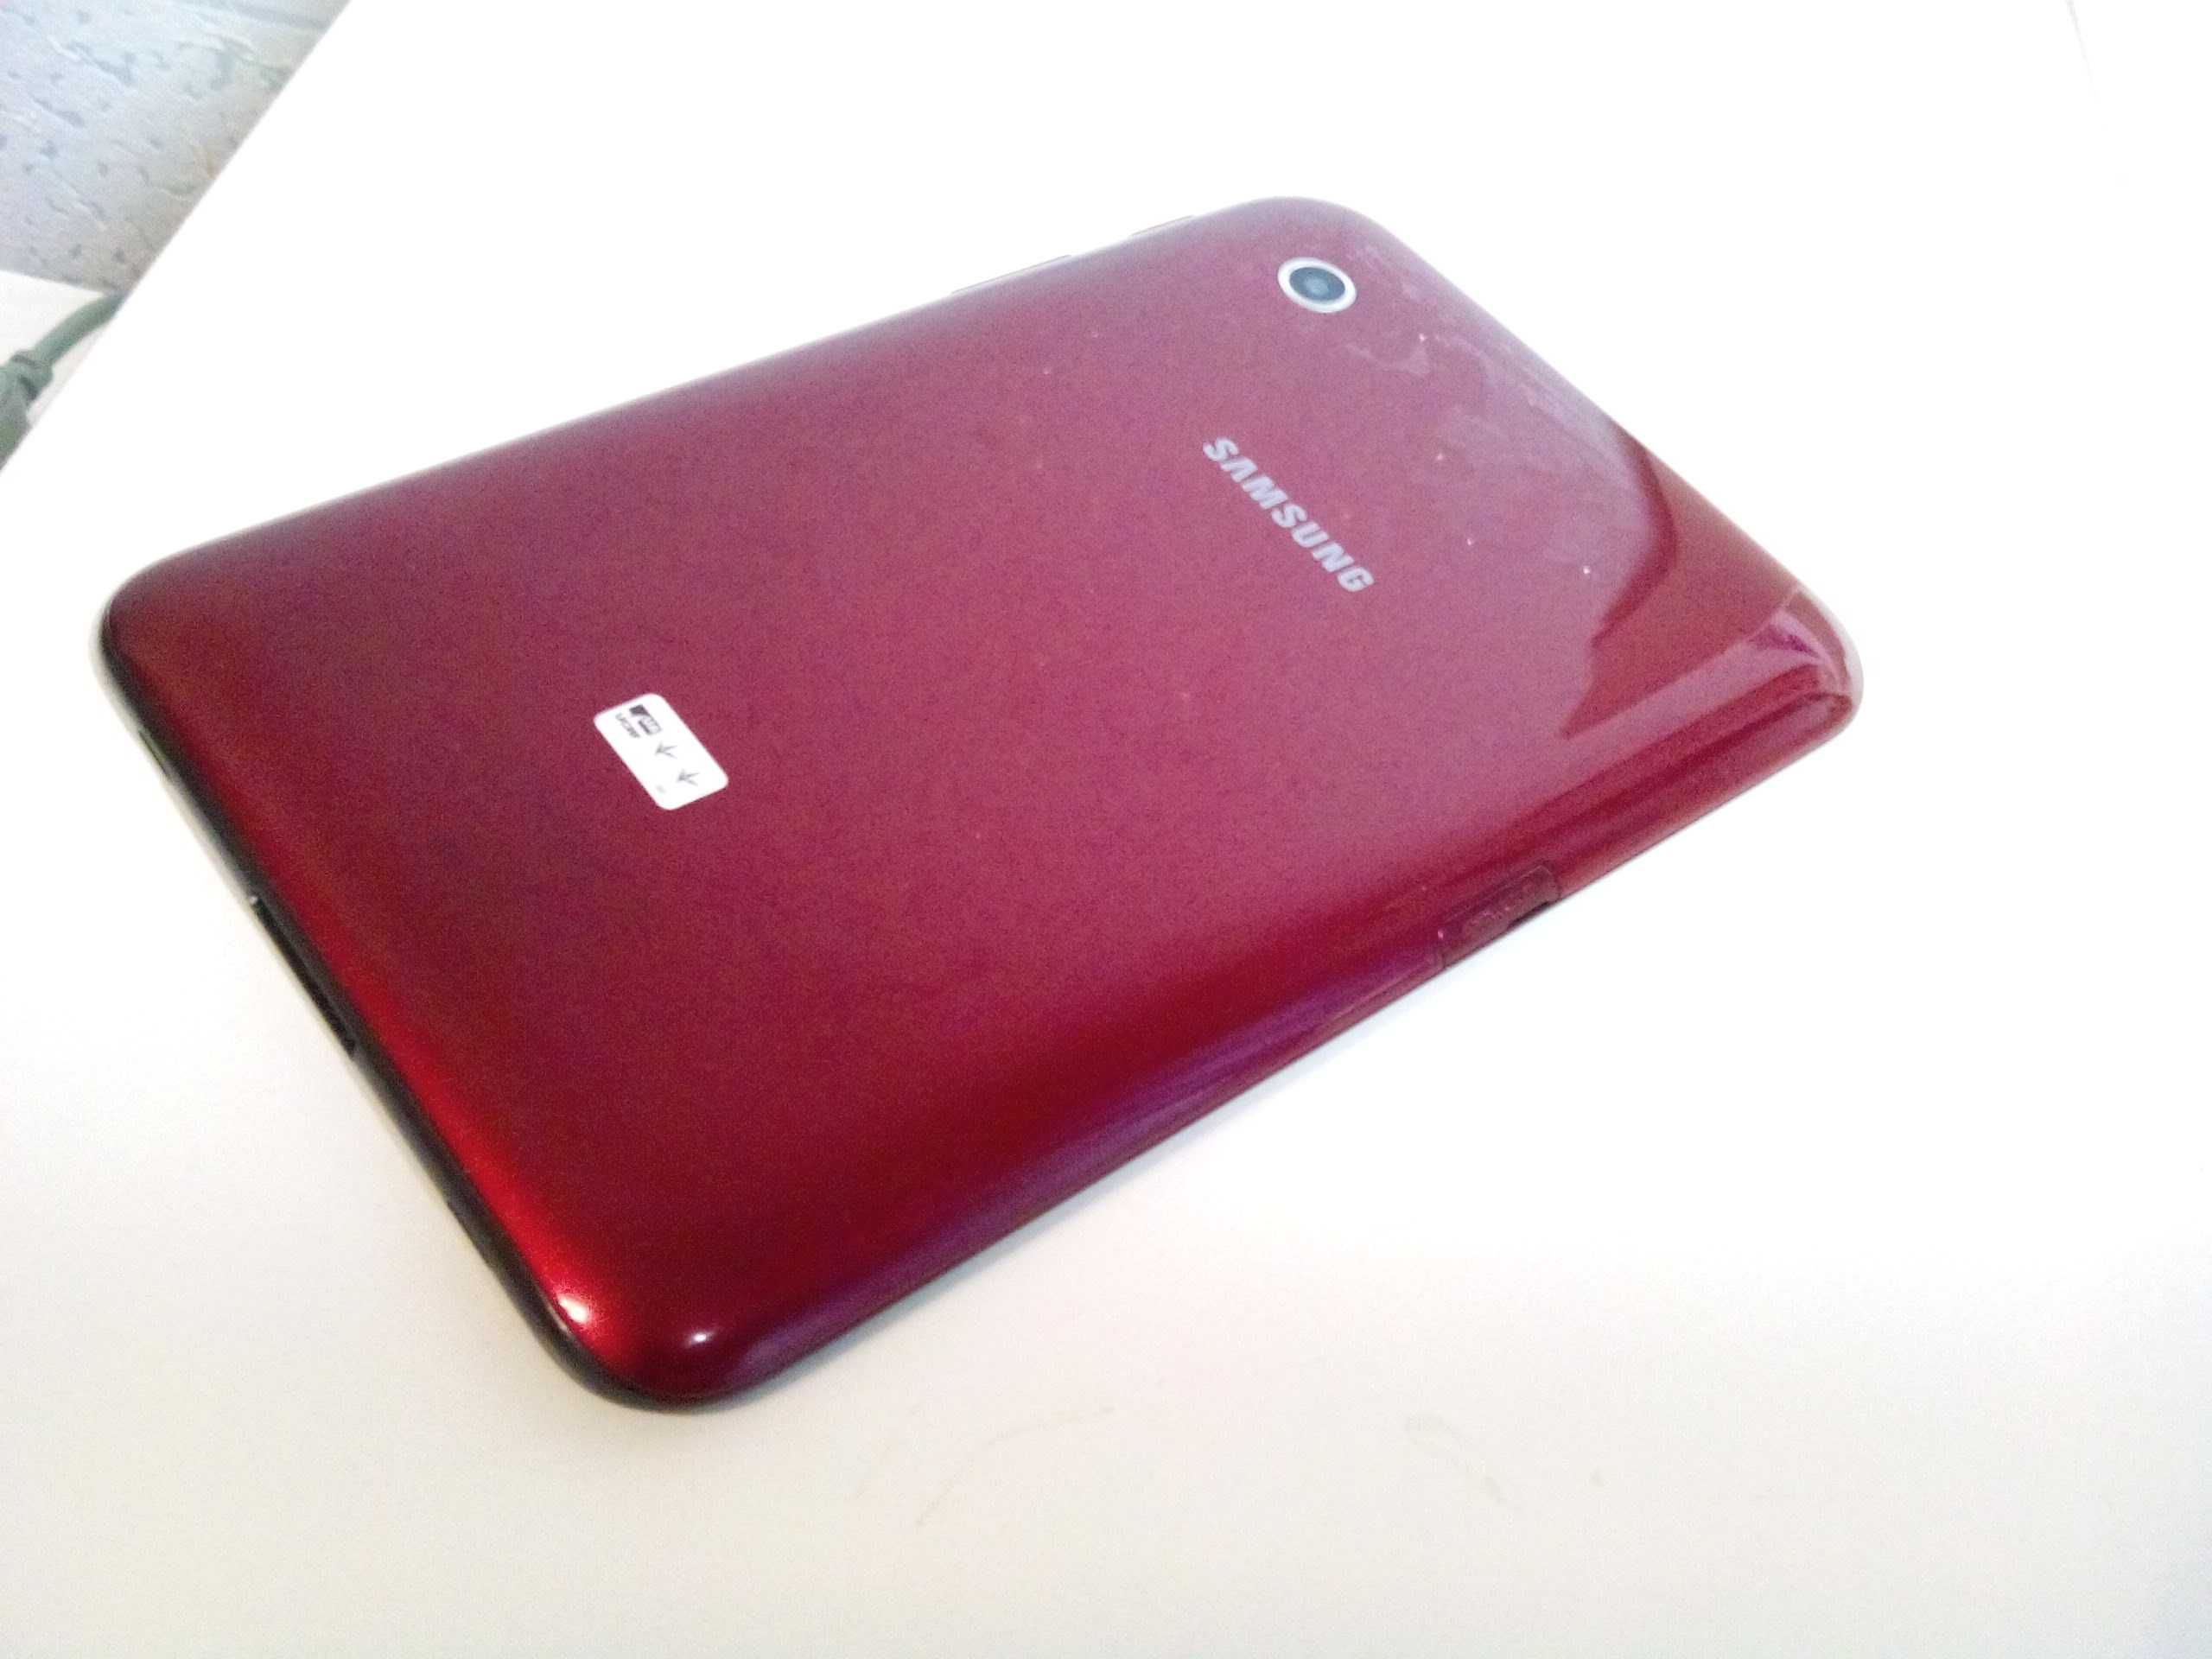 Оригинальный Samsung Galaxy Tab 2 в красном цвете! IPS! 1/8GB, 2 cam!